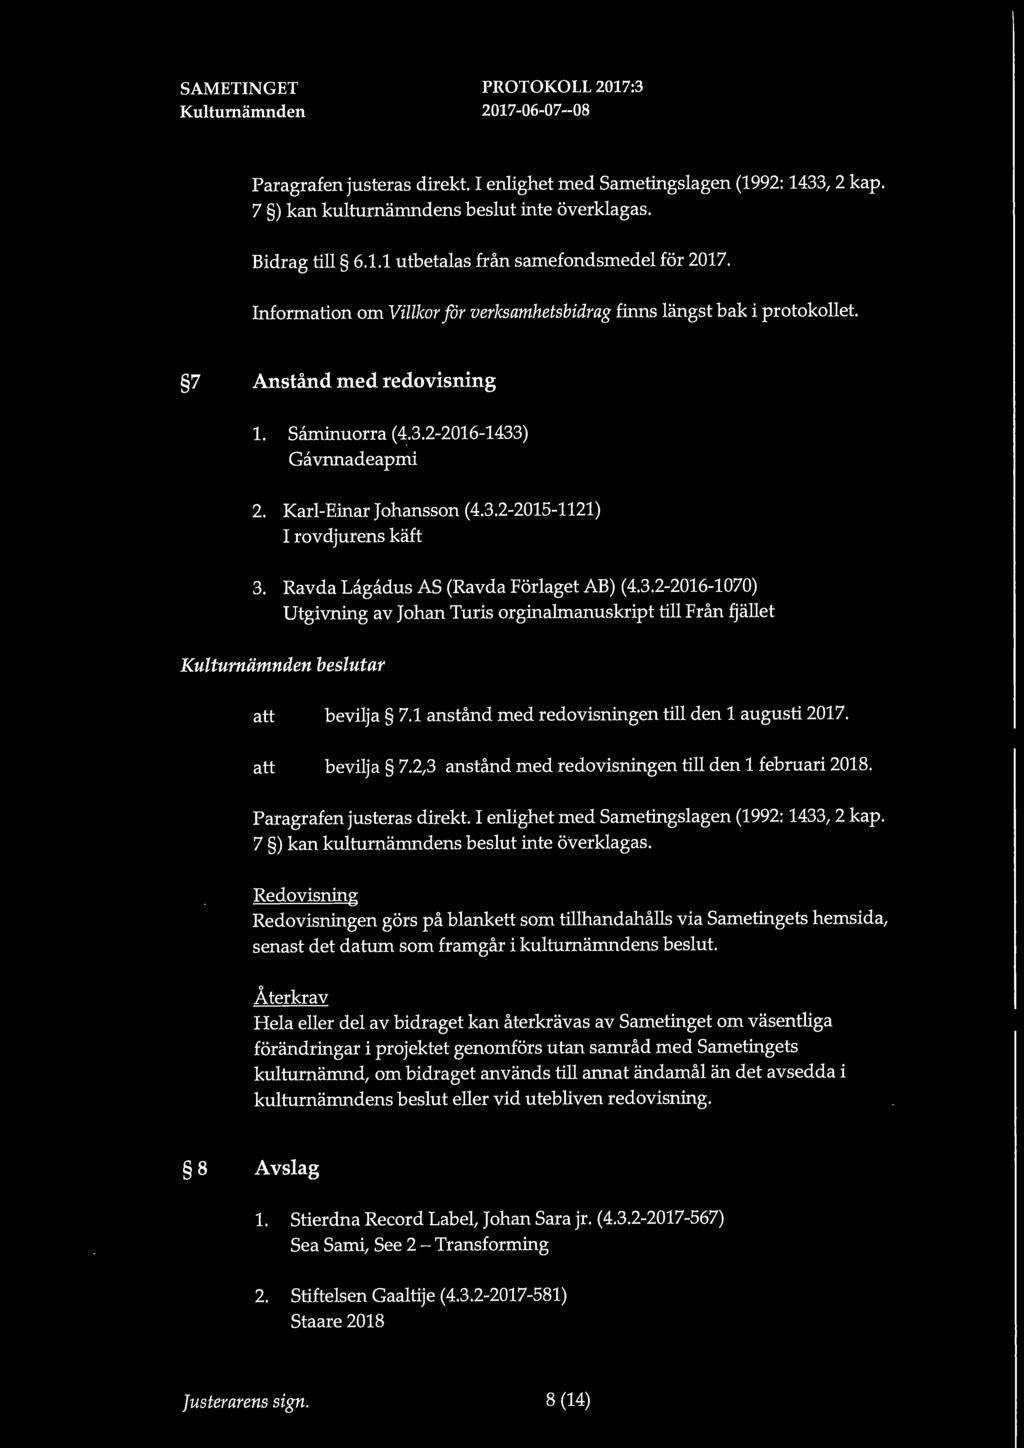 Karl-E:inar Johansson (4.3.2-2015-1121) I rovdjurens käft 3. Ravda Lagadus AS (Ravda Förlaget AB) (4.3.2-2016-1070) Utgivn:ing av Johan Turis org:inalmanuskript till Från fjället beslutar bevilja 7.